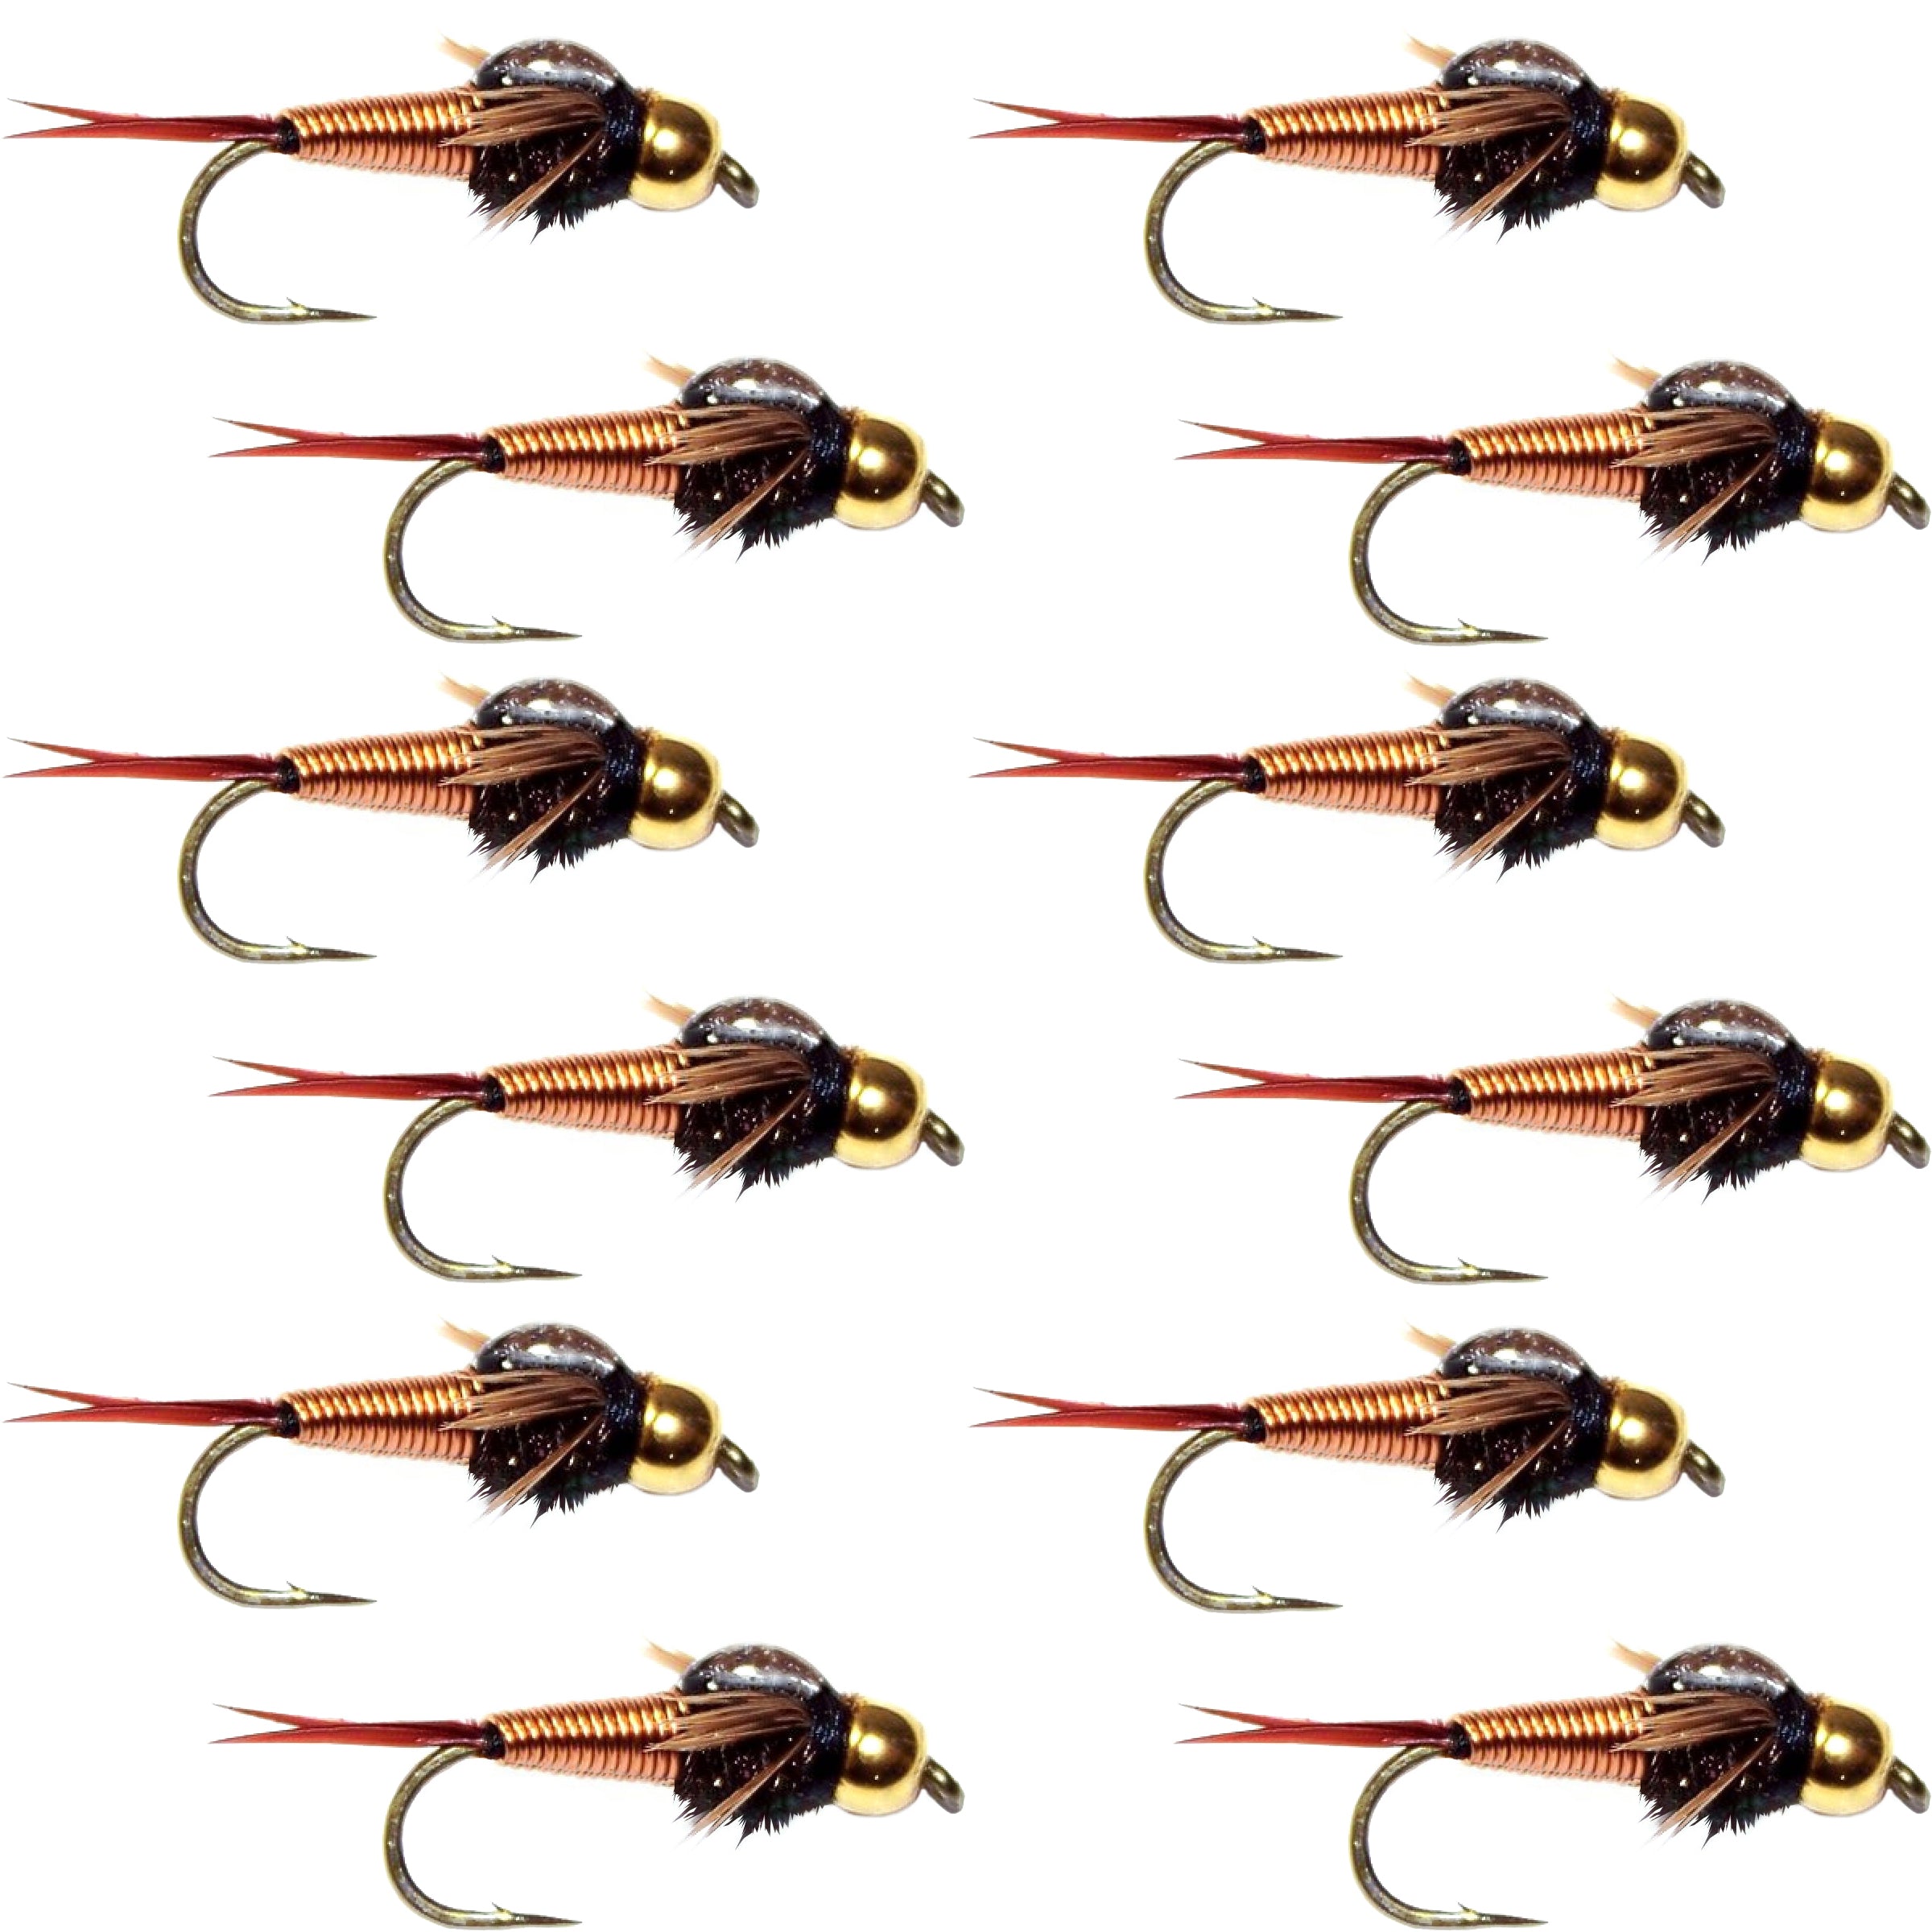 Bead Head Copper John Nymph 1 Dozen Fly Fishing Flies - Hook Size 18